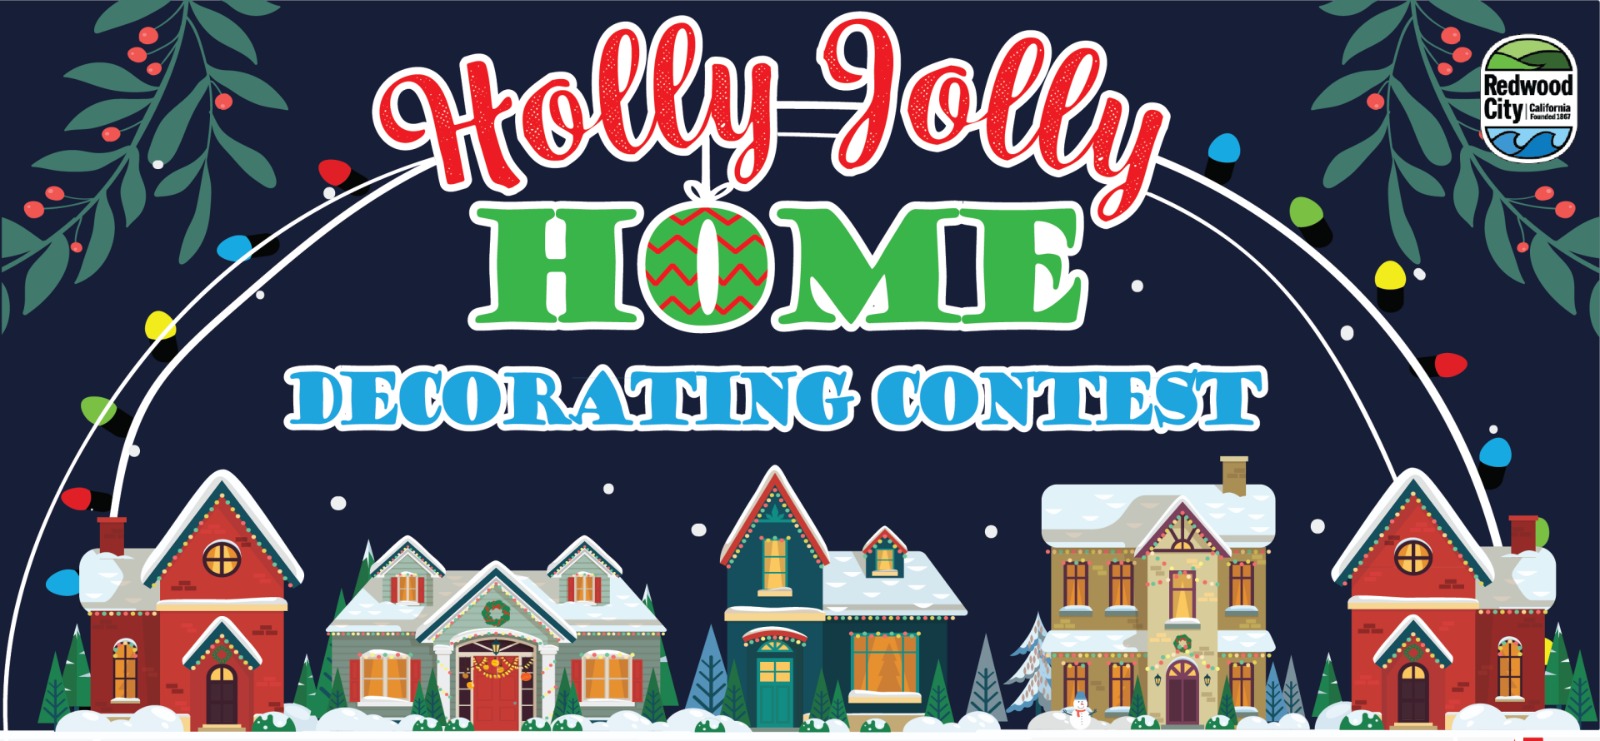 Redwood City se suma con su concurso anual de decoración de casas Holly Jolly.